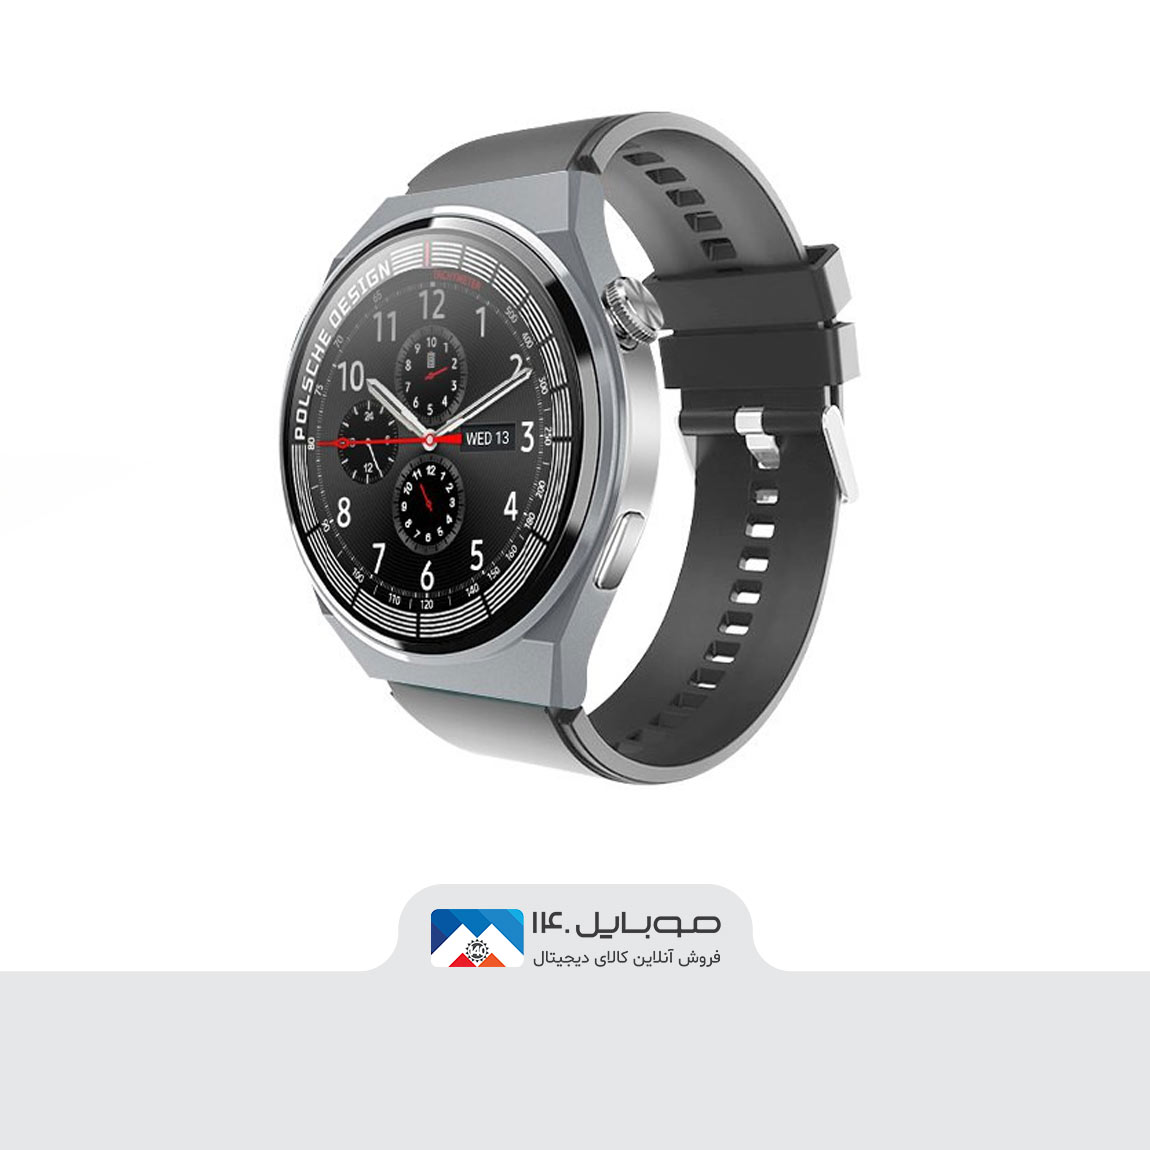 Hivami Tian 7 Smart Watch 1